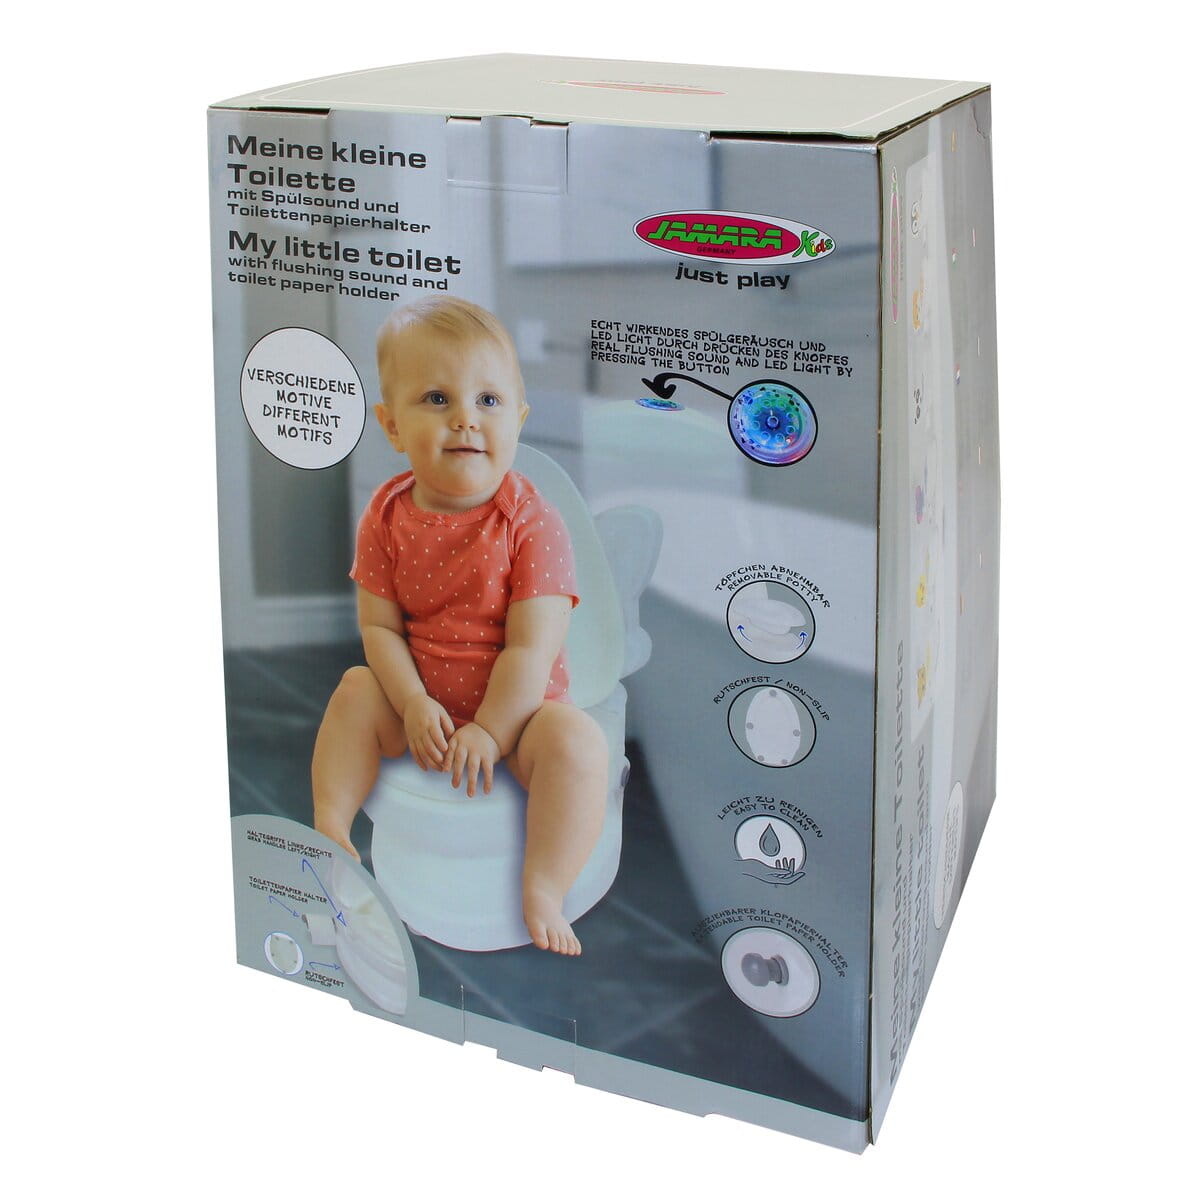 Jamara Meine kleine Toilette mit | Toilettenpapierhalter Spülsound und JA-460957 Elefant